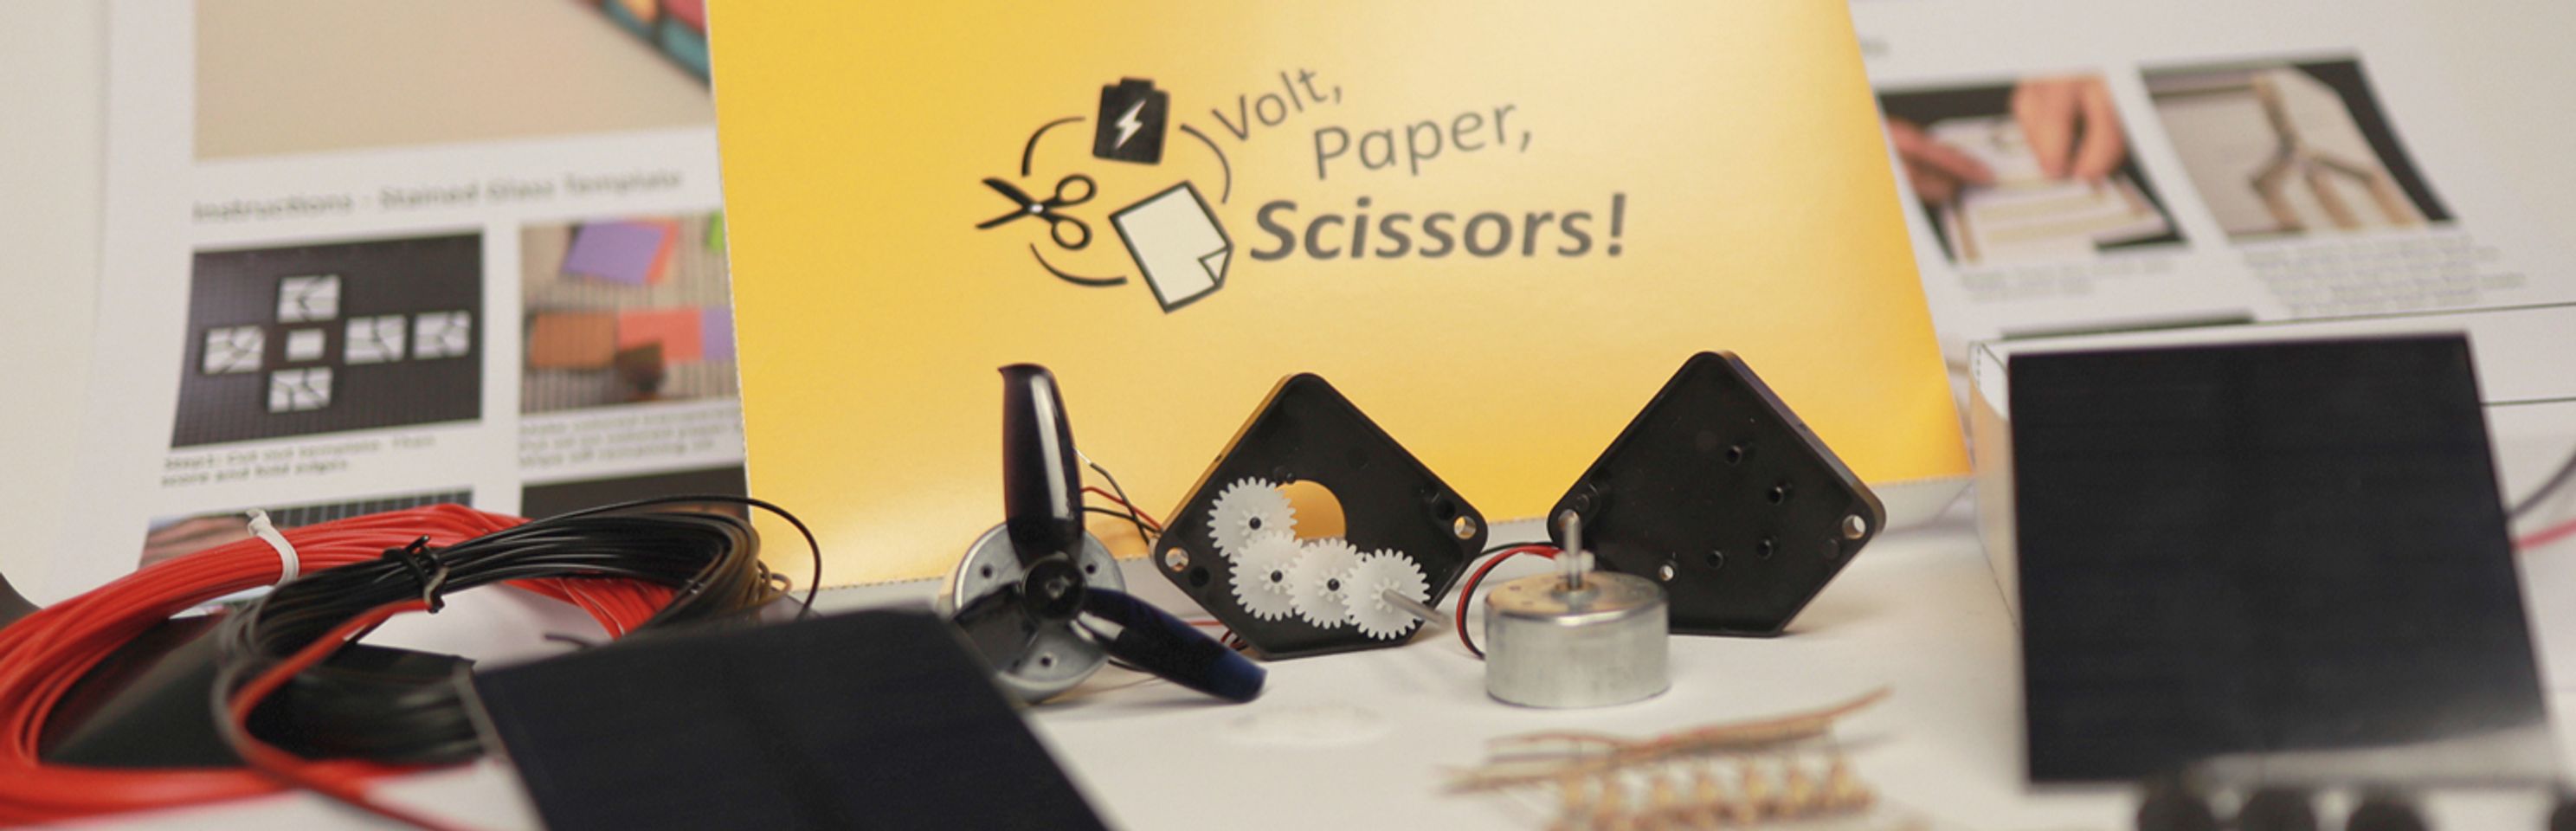 Volt, Paper, Scissors!